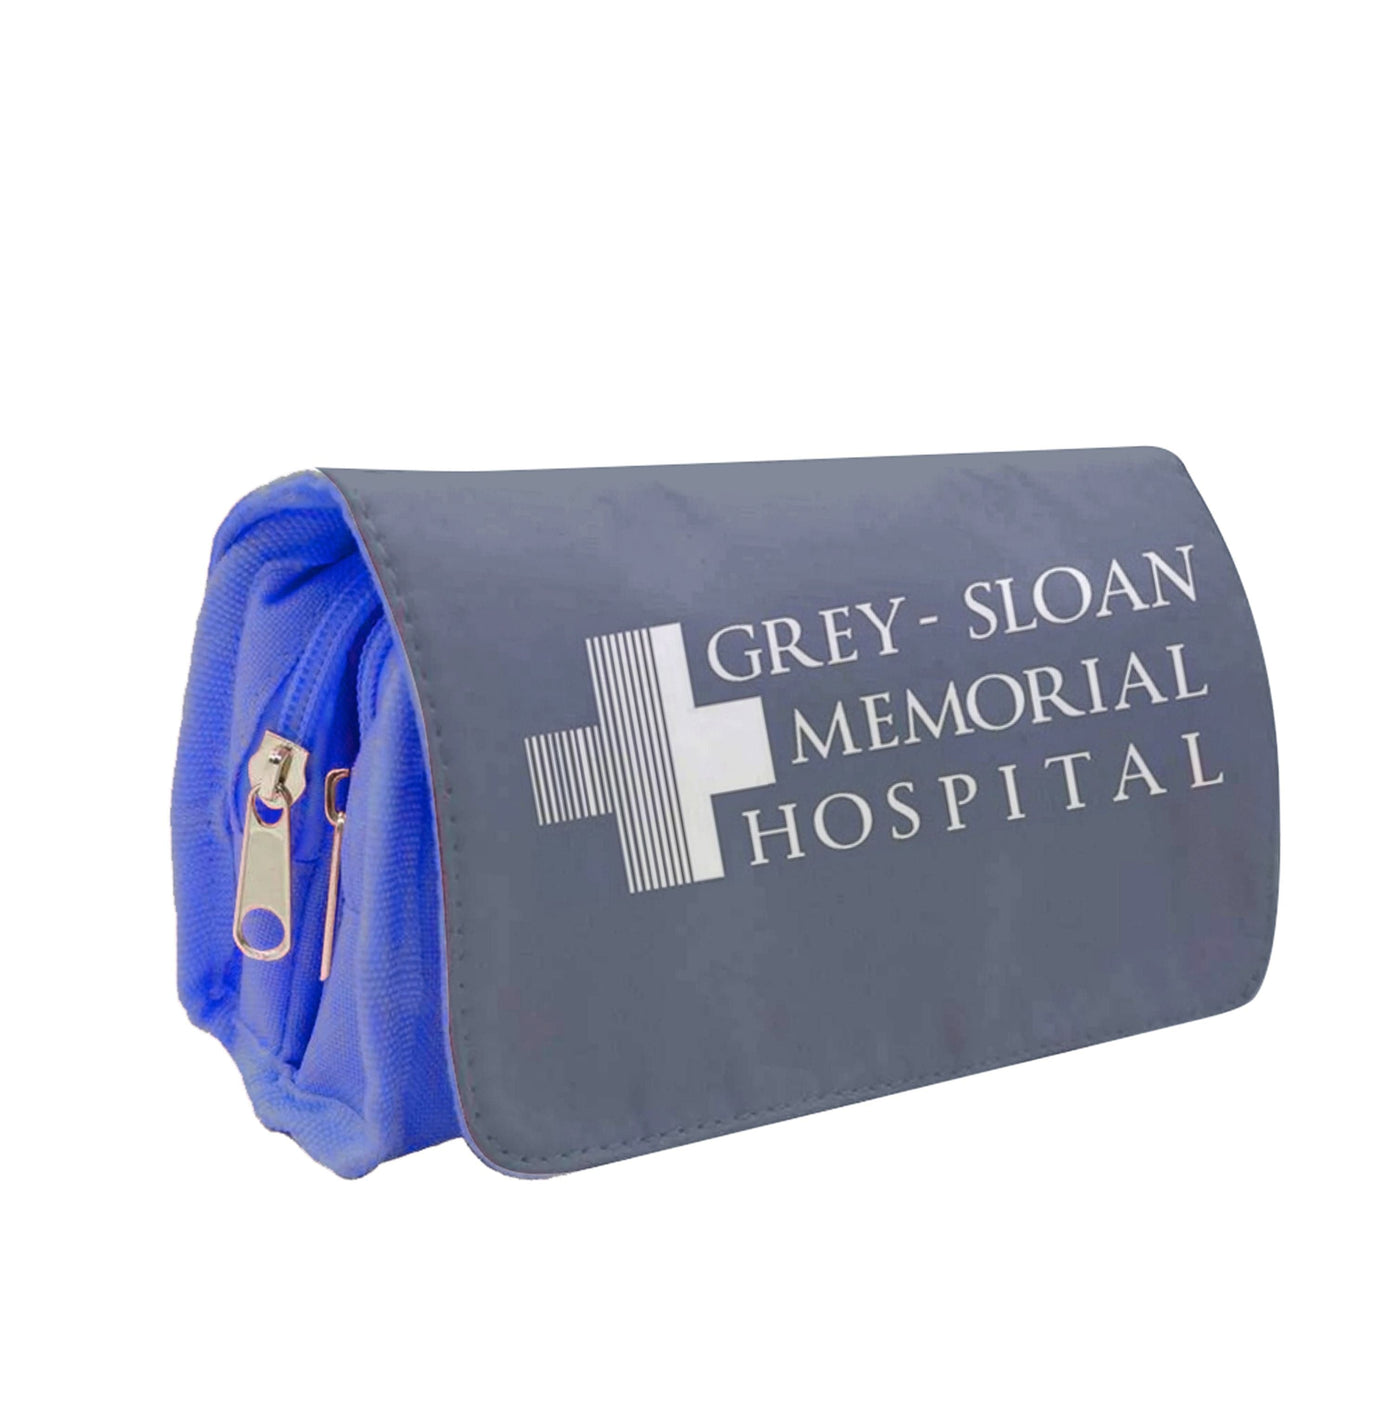 Grey - Sloan Memorial Hospital - Grey's Anatomy Pencil Case